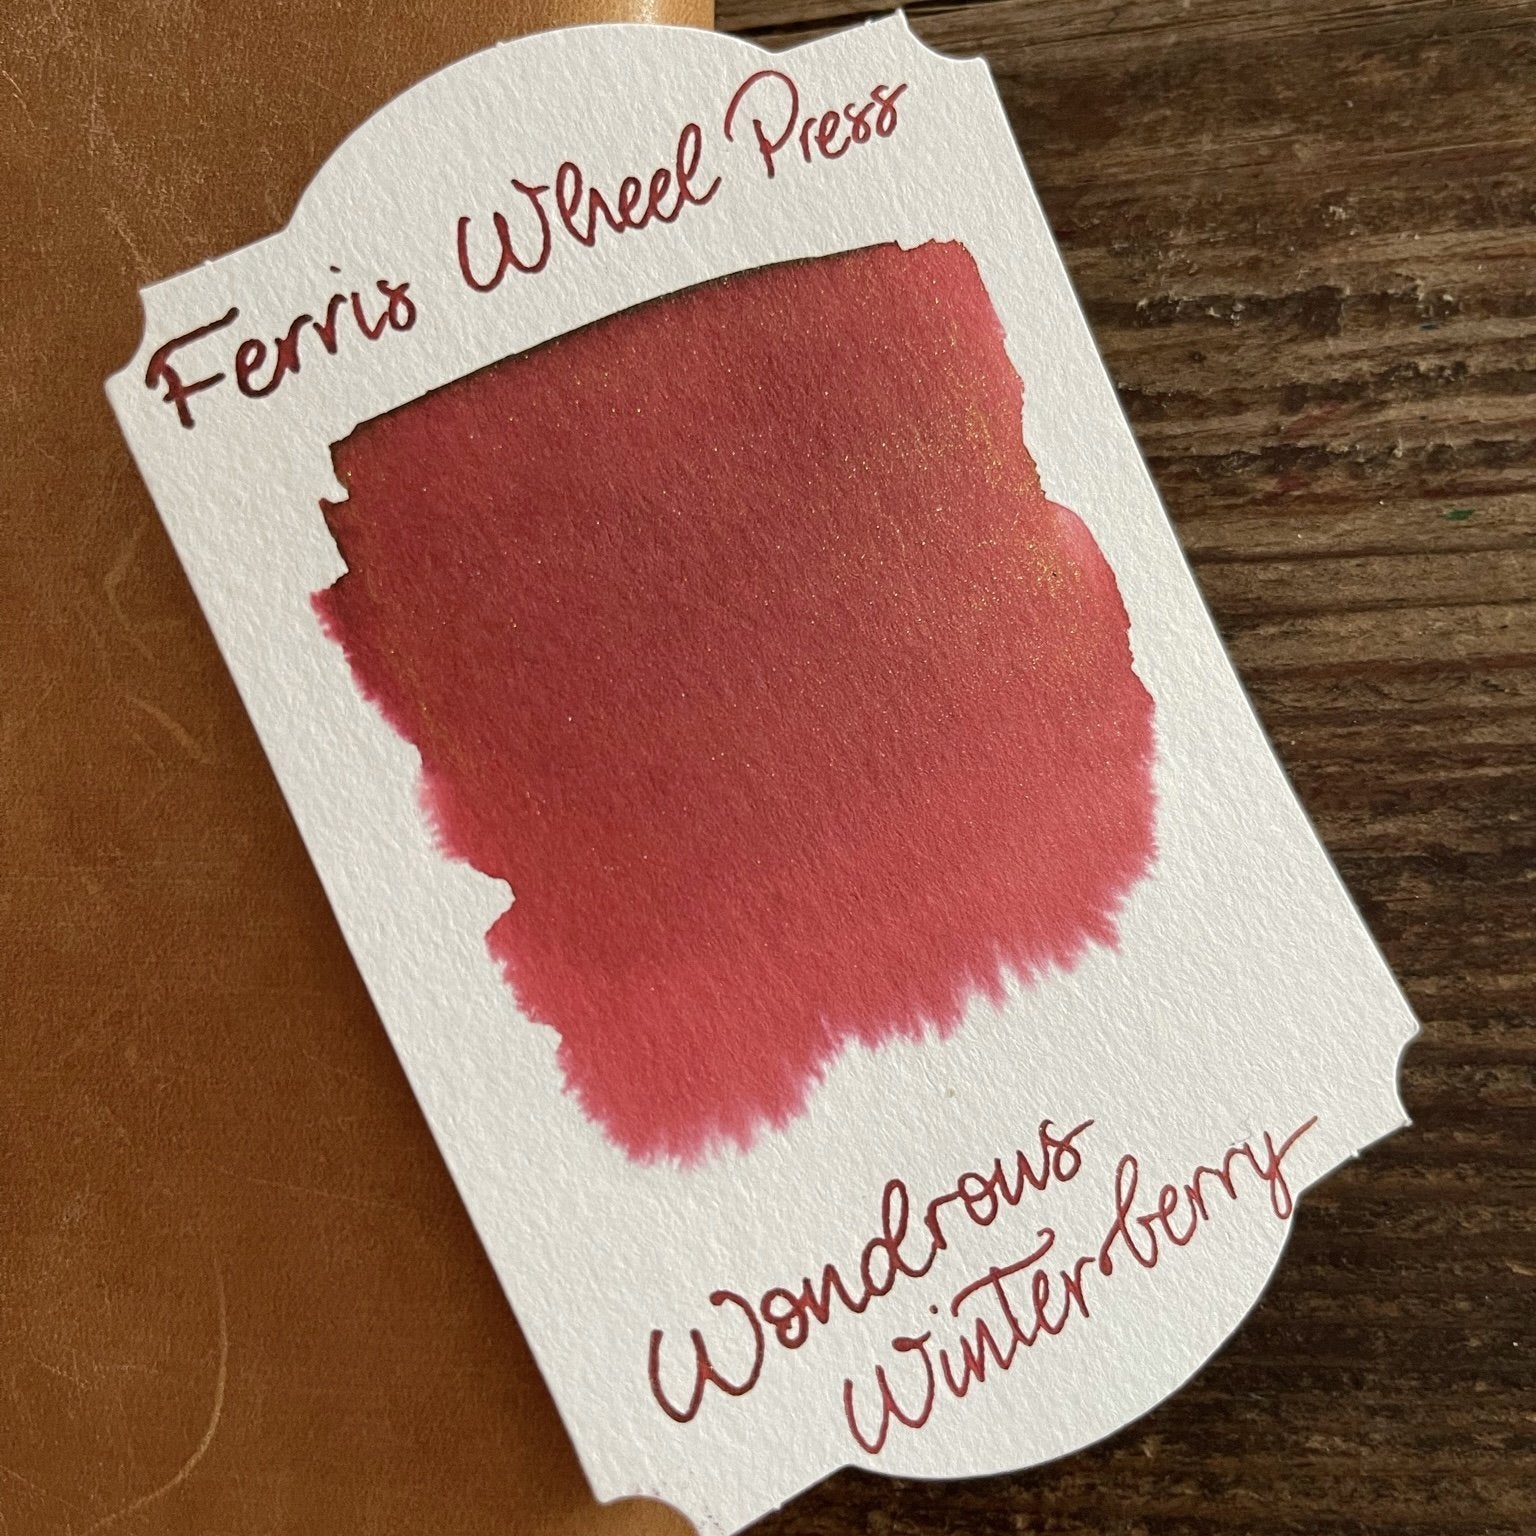 Ferris Wheel Press Wondrous Winterberry Shimmer Ink